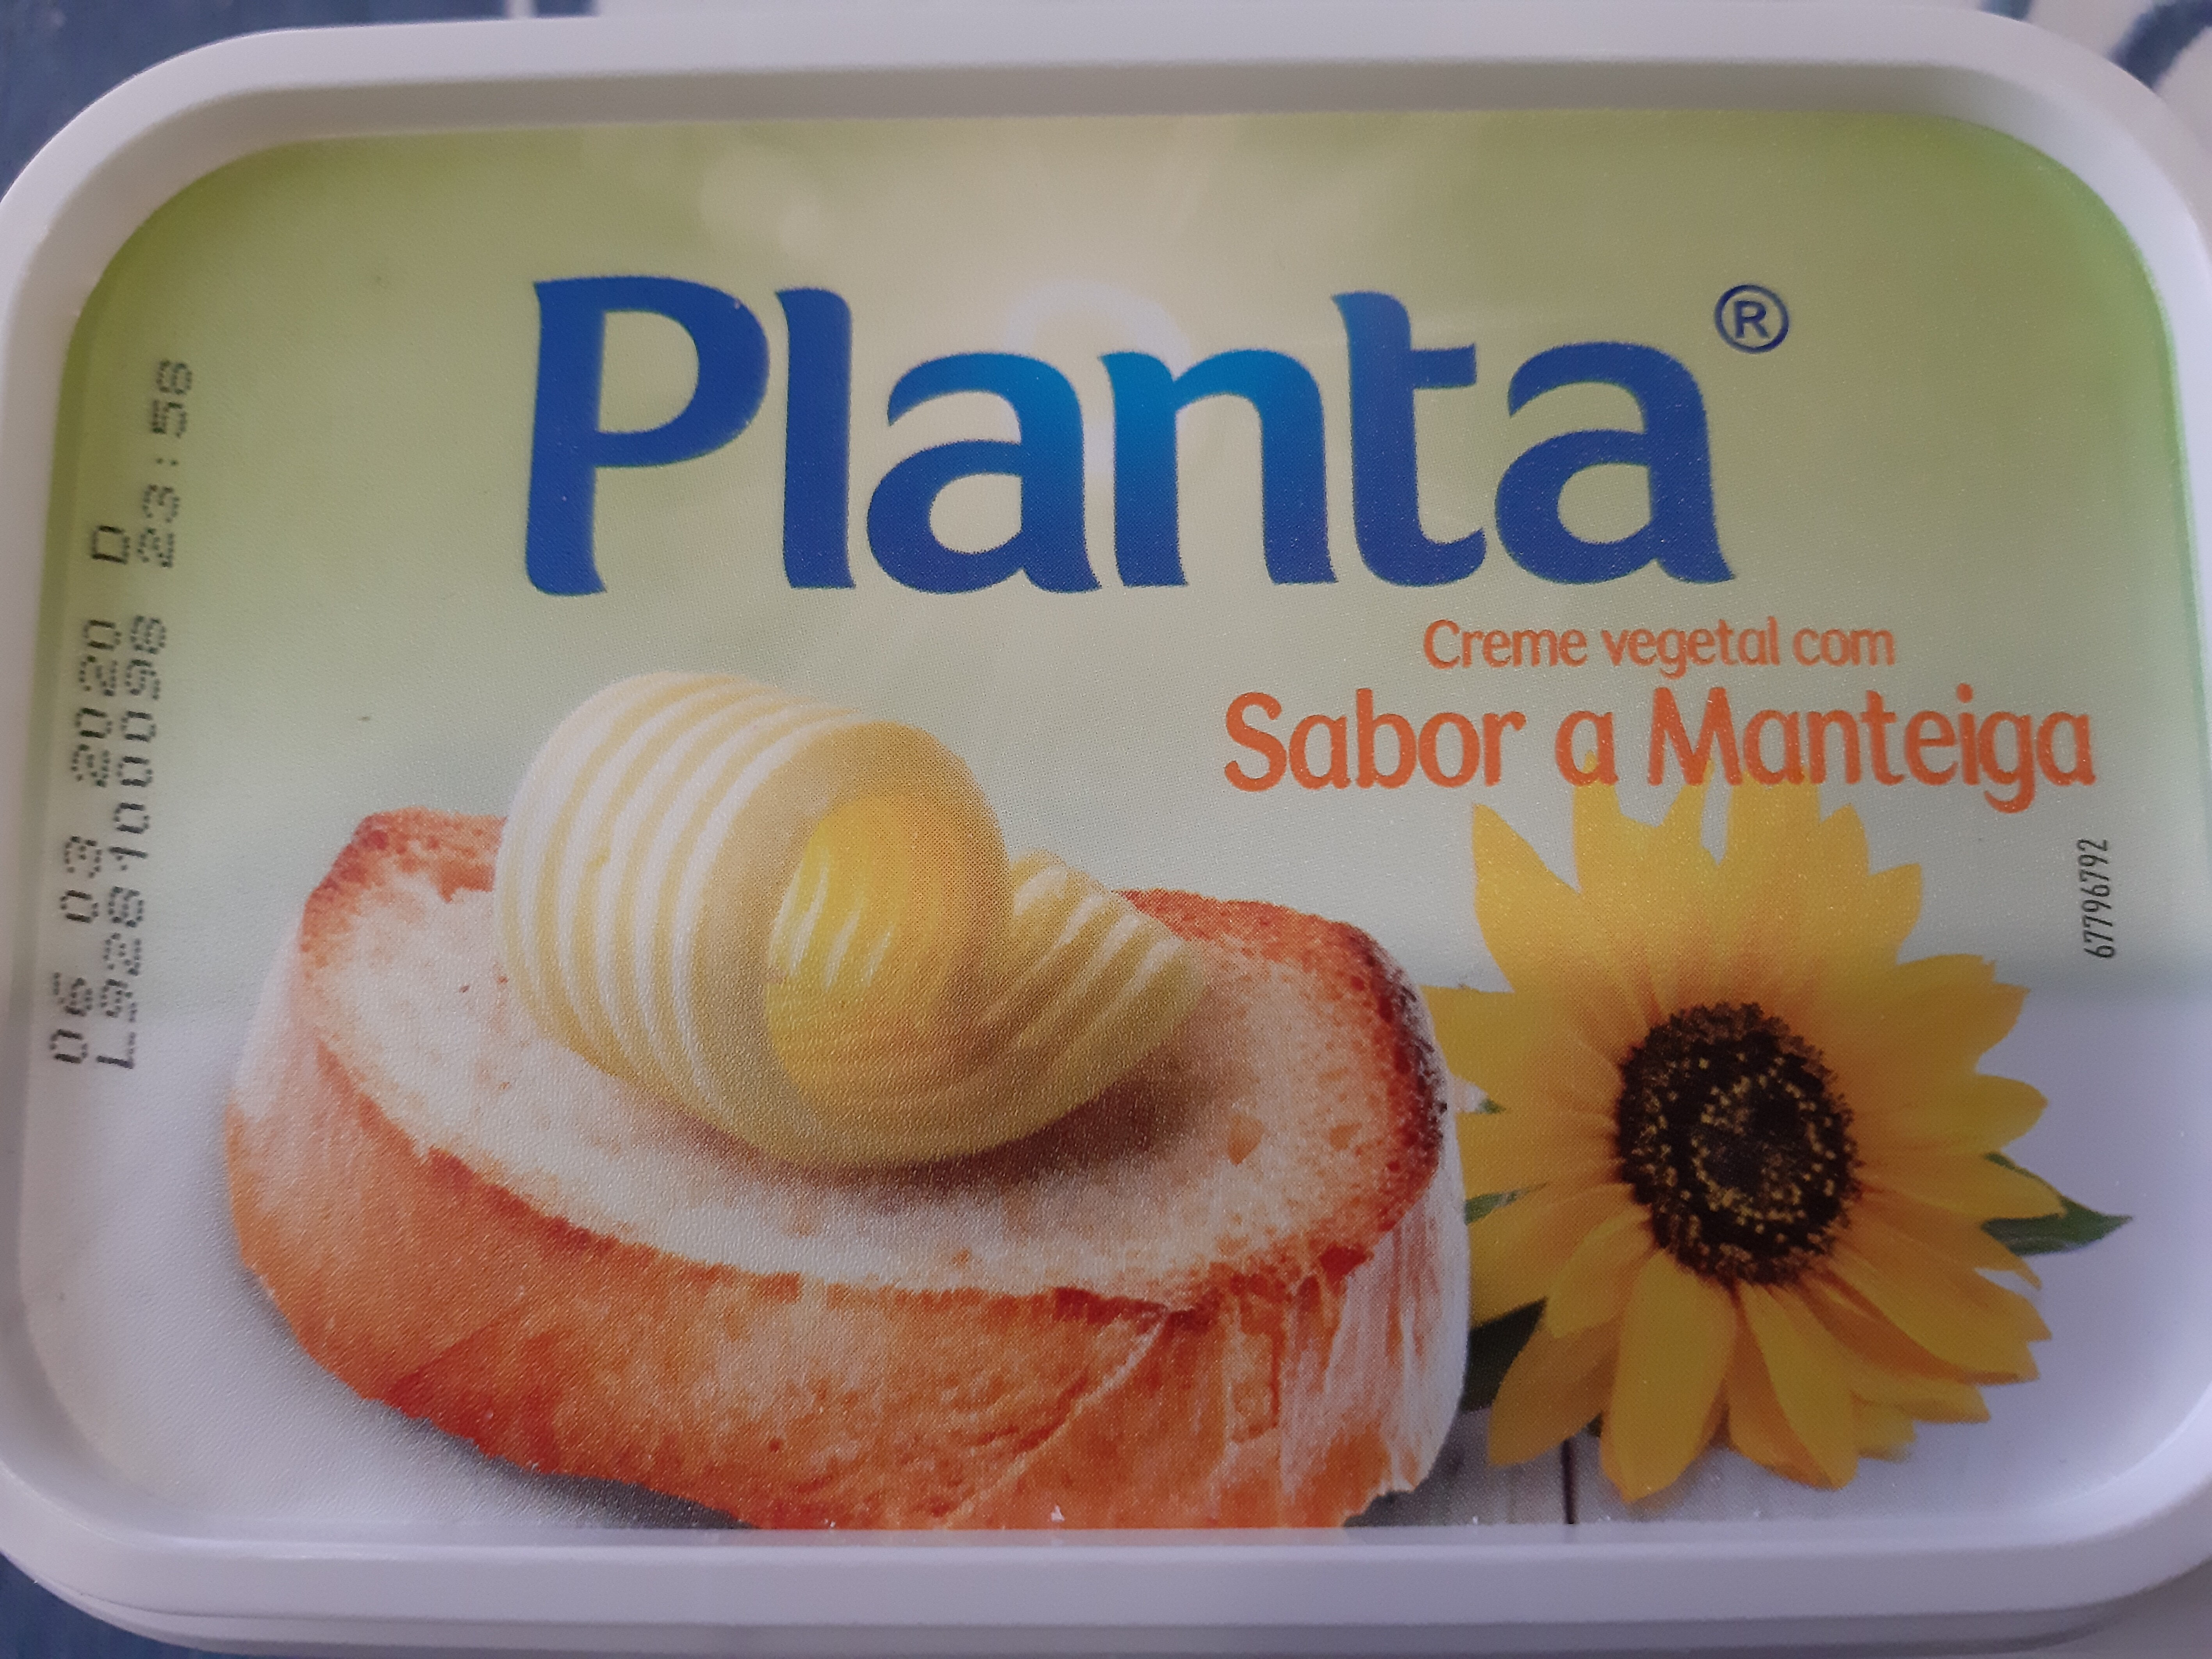 Creme Vegetal com Sabor a Manteiga - Planta - 250 g